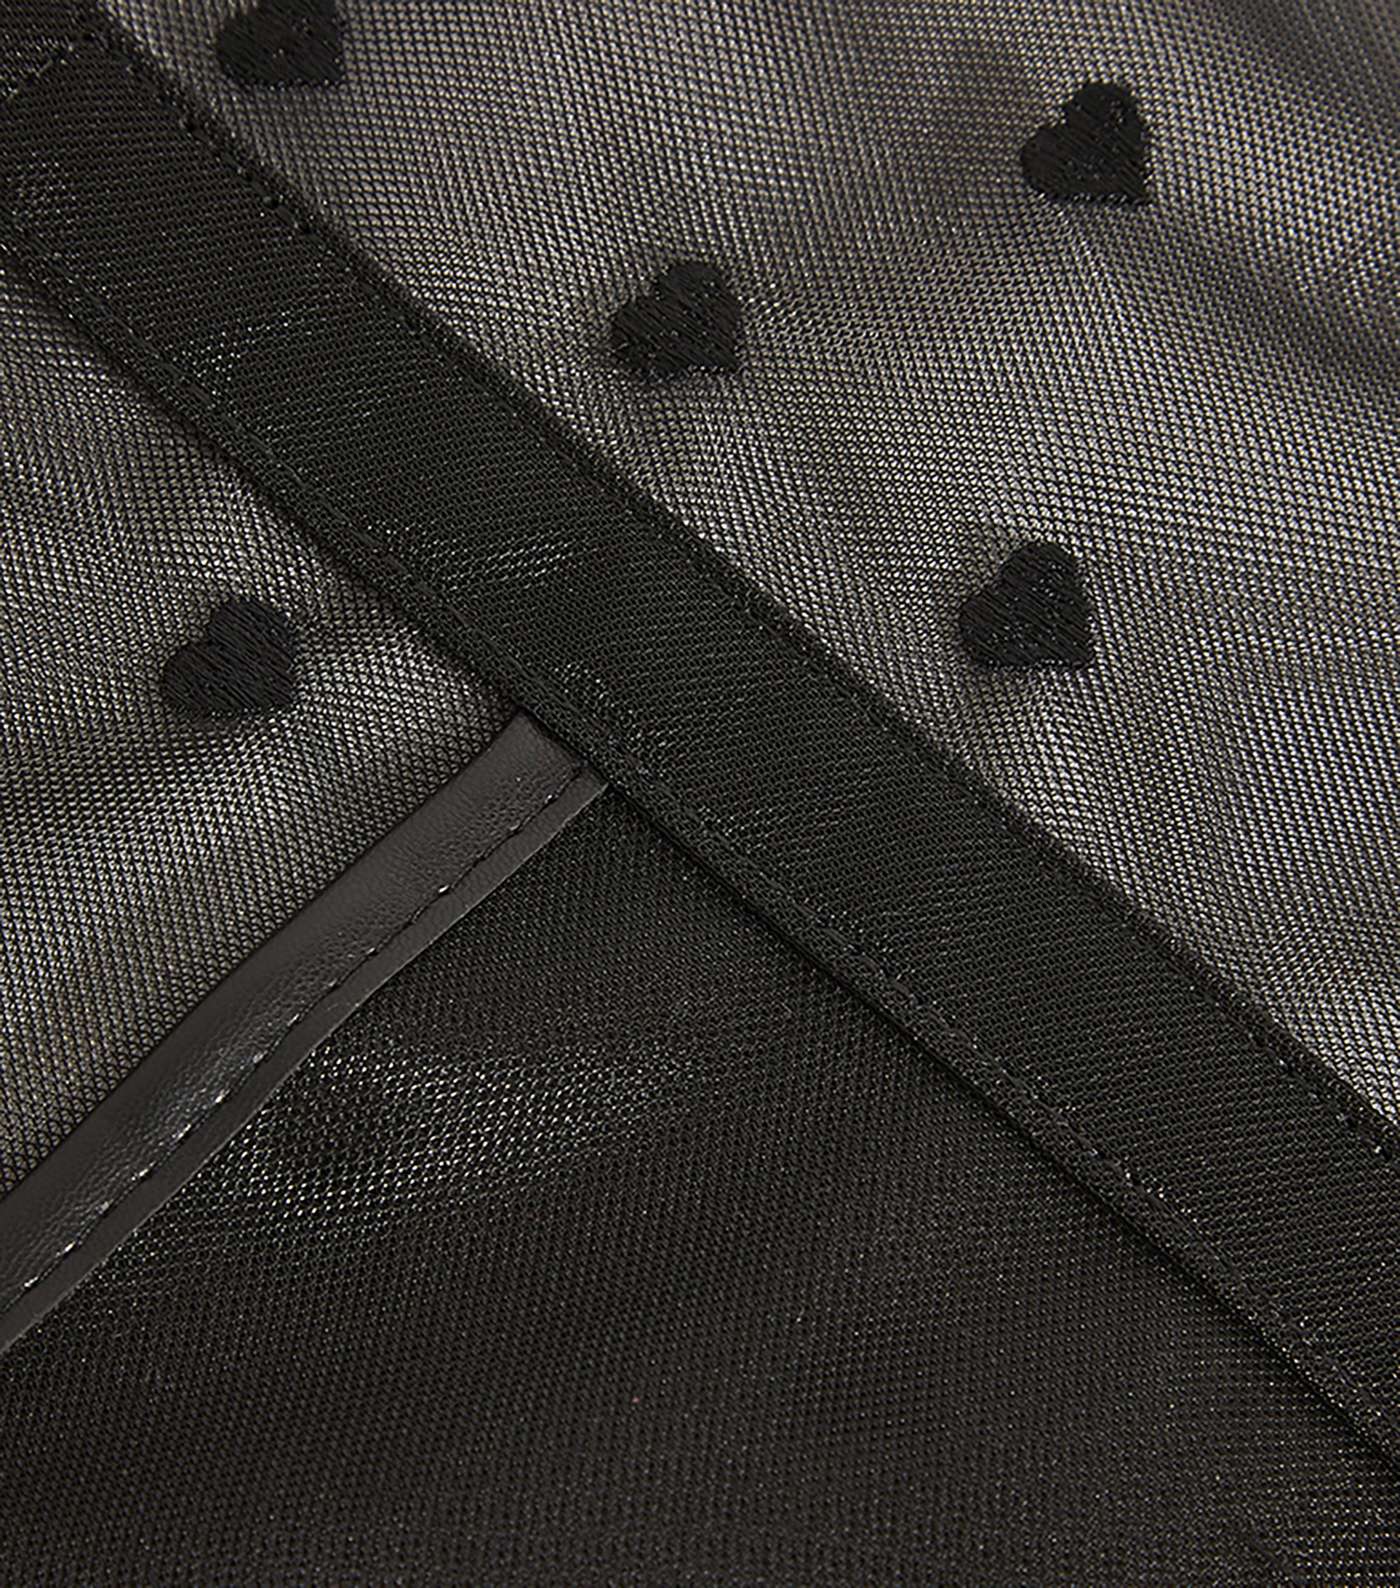 Skinnydip Black Heart Mesh Tote Bag Image 6